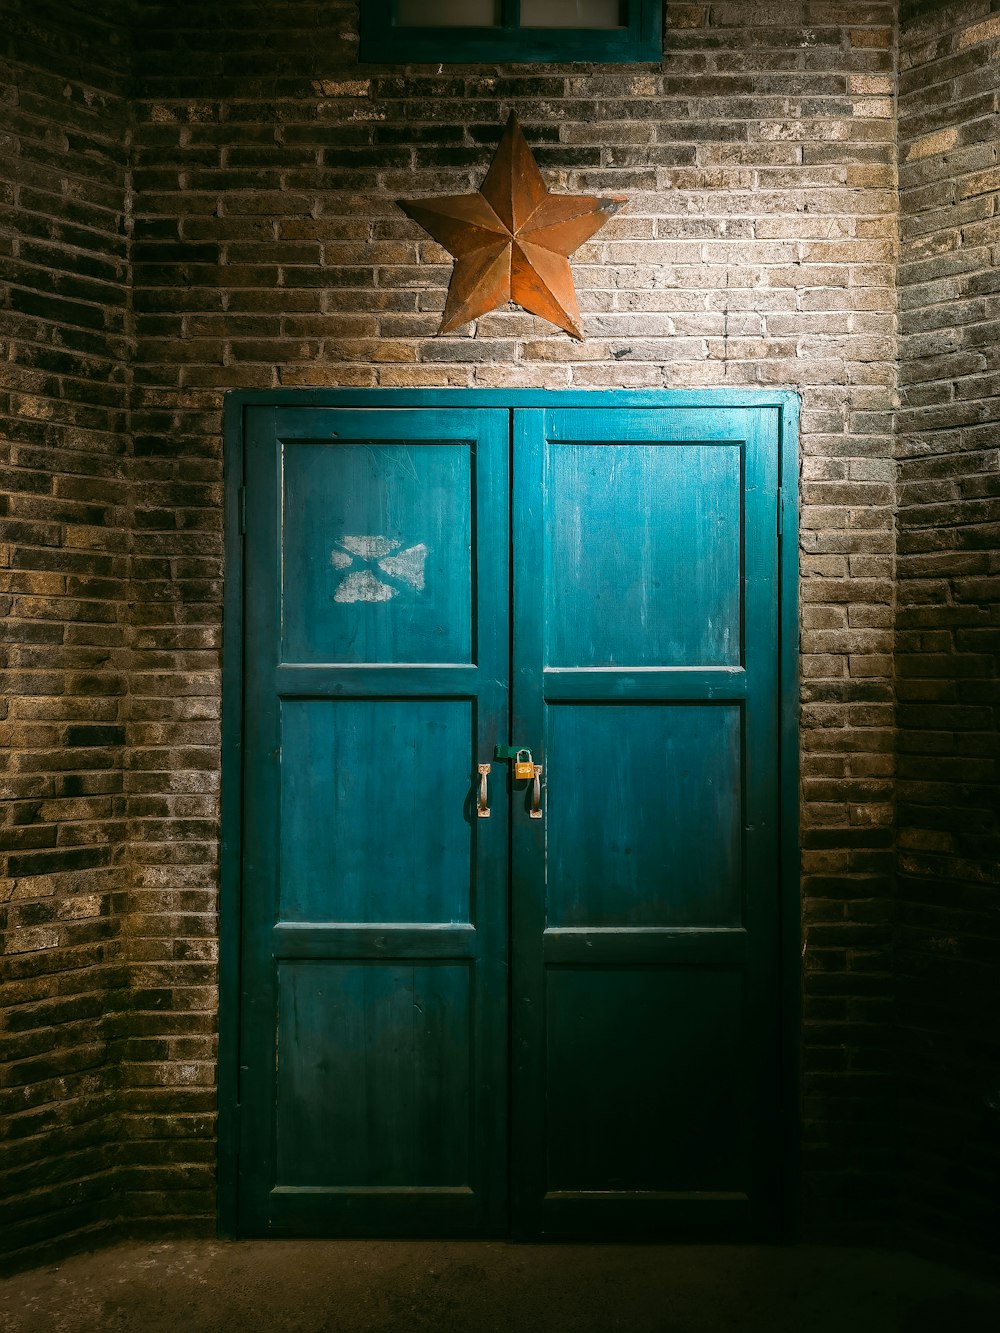 その上に星が描かれた緑色のドア